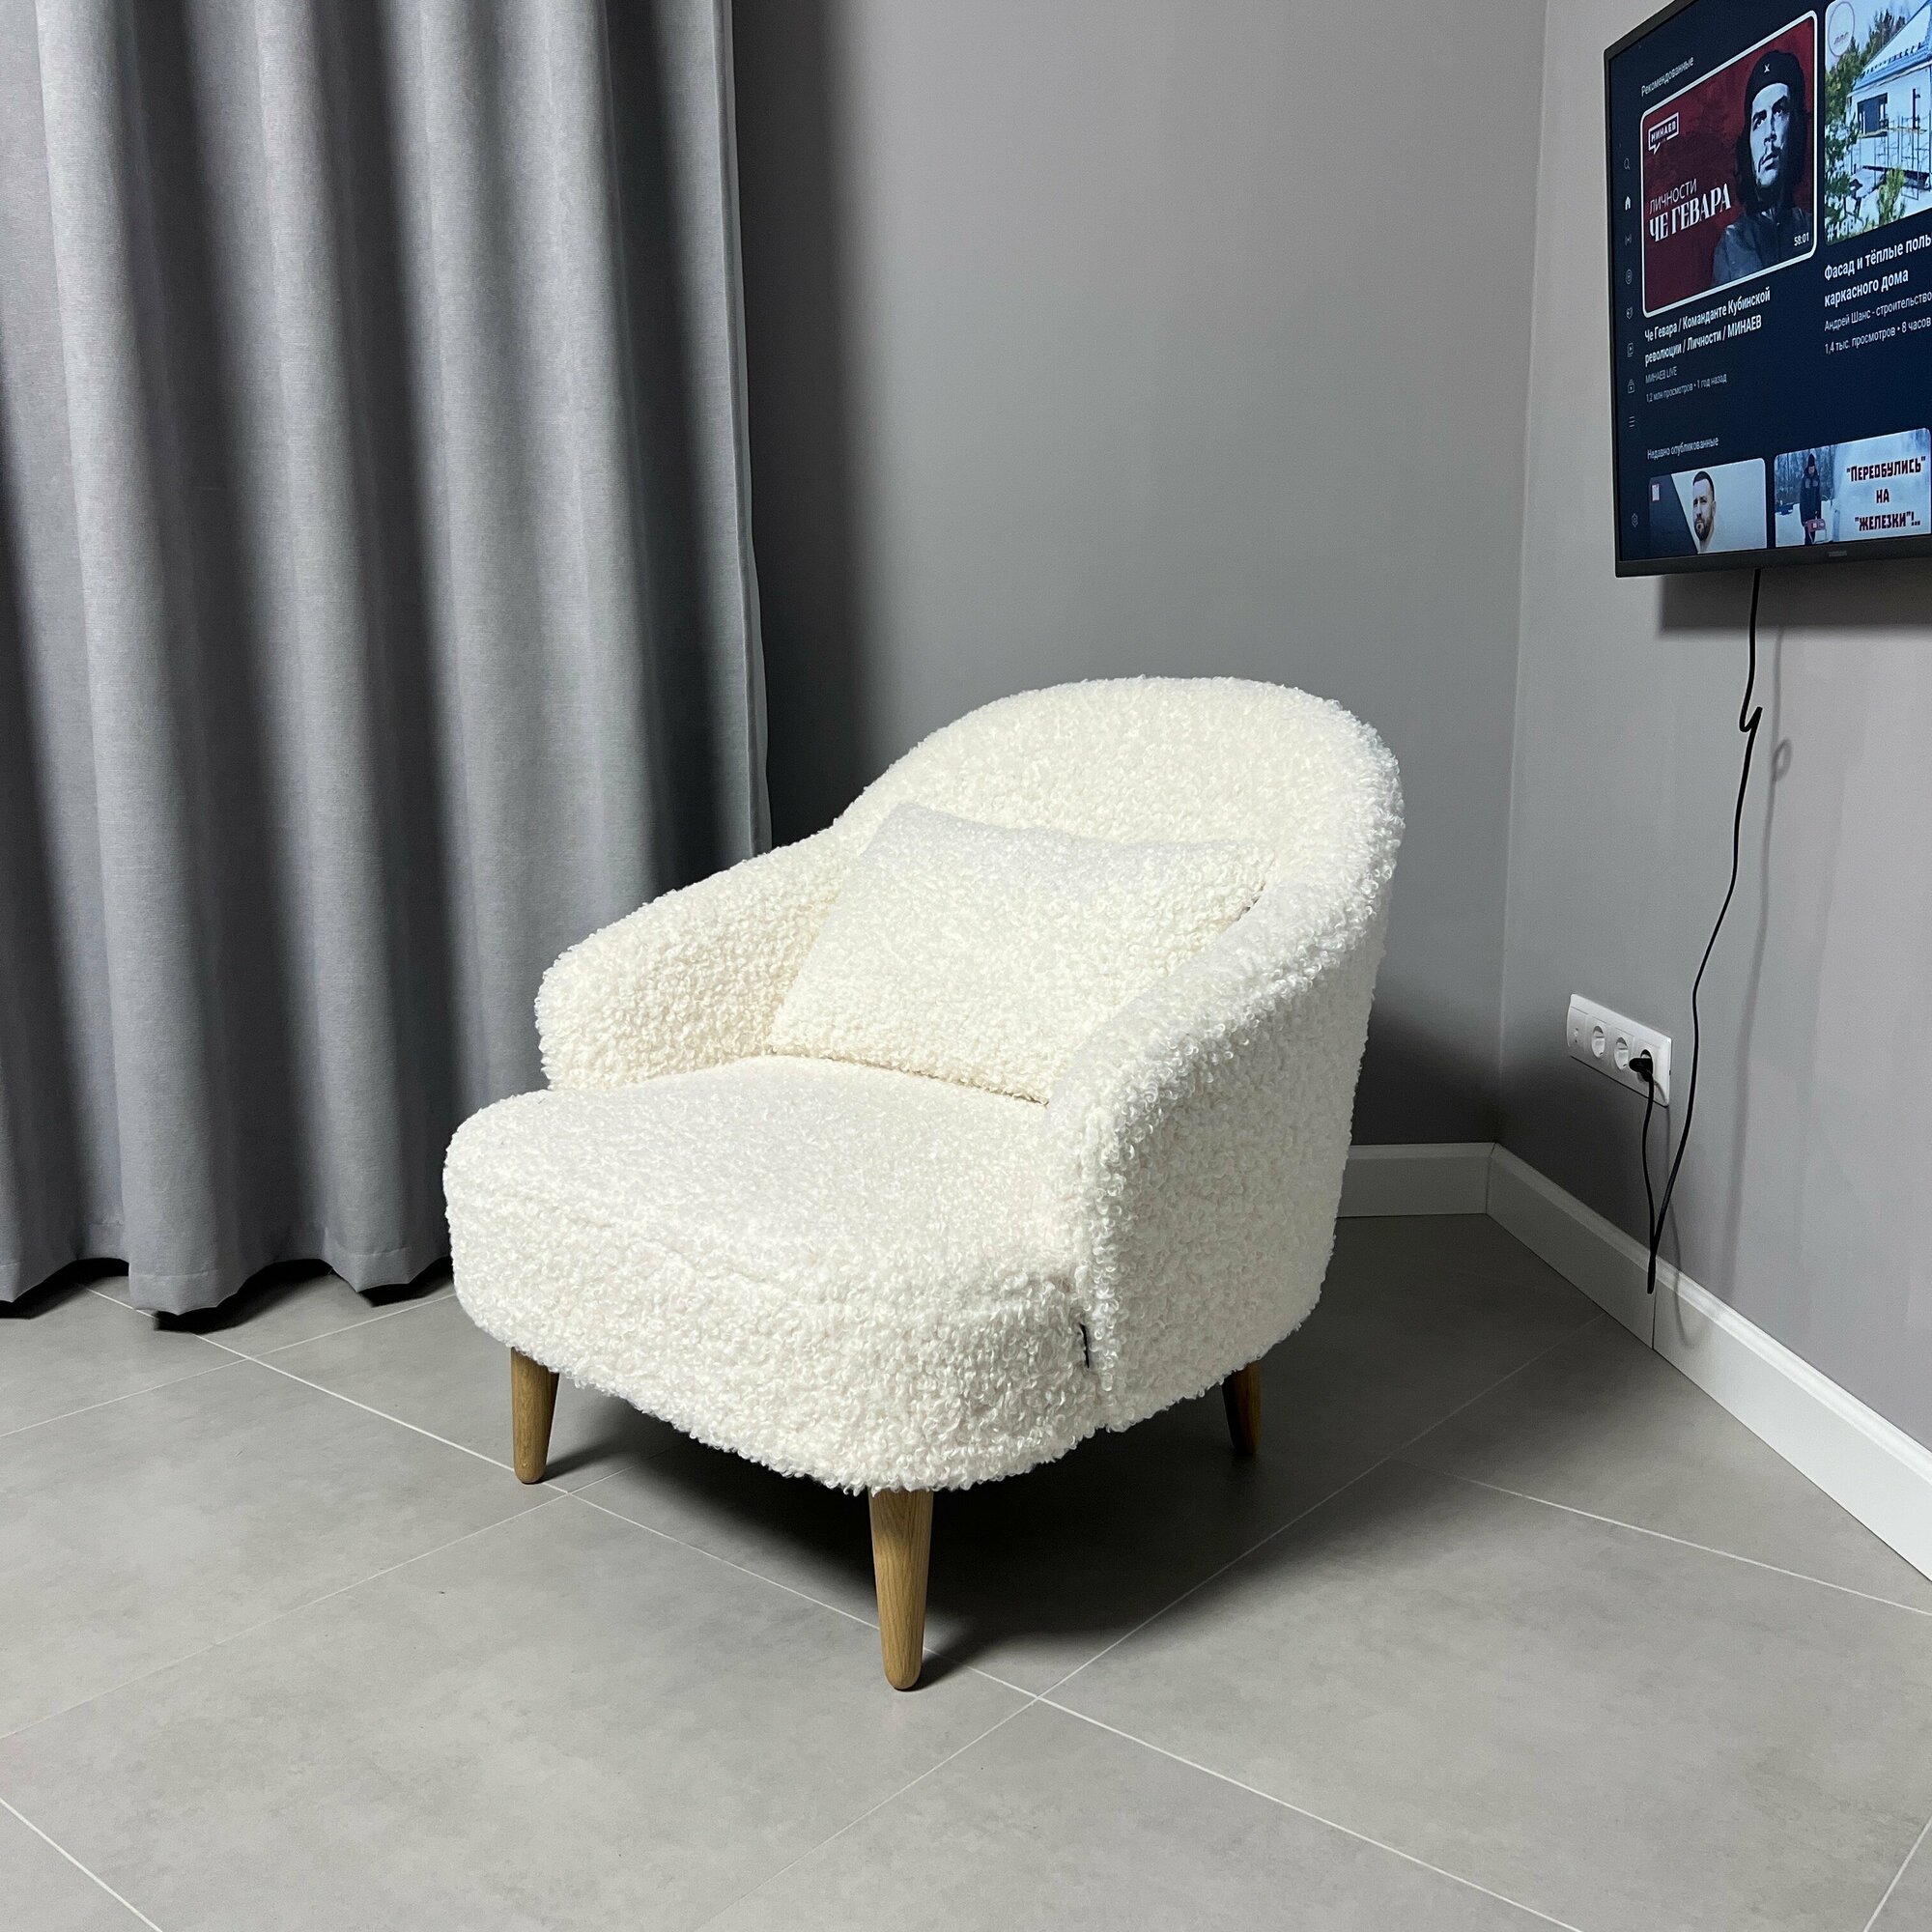 Кресло Bonfico Унно, искусственный мех, белый барашек, кресло в гостиную мягкое